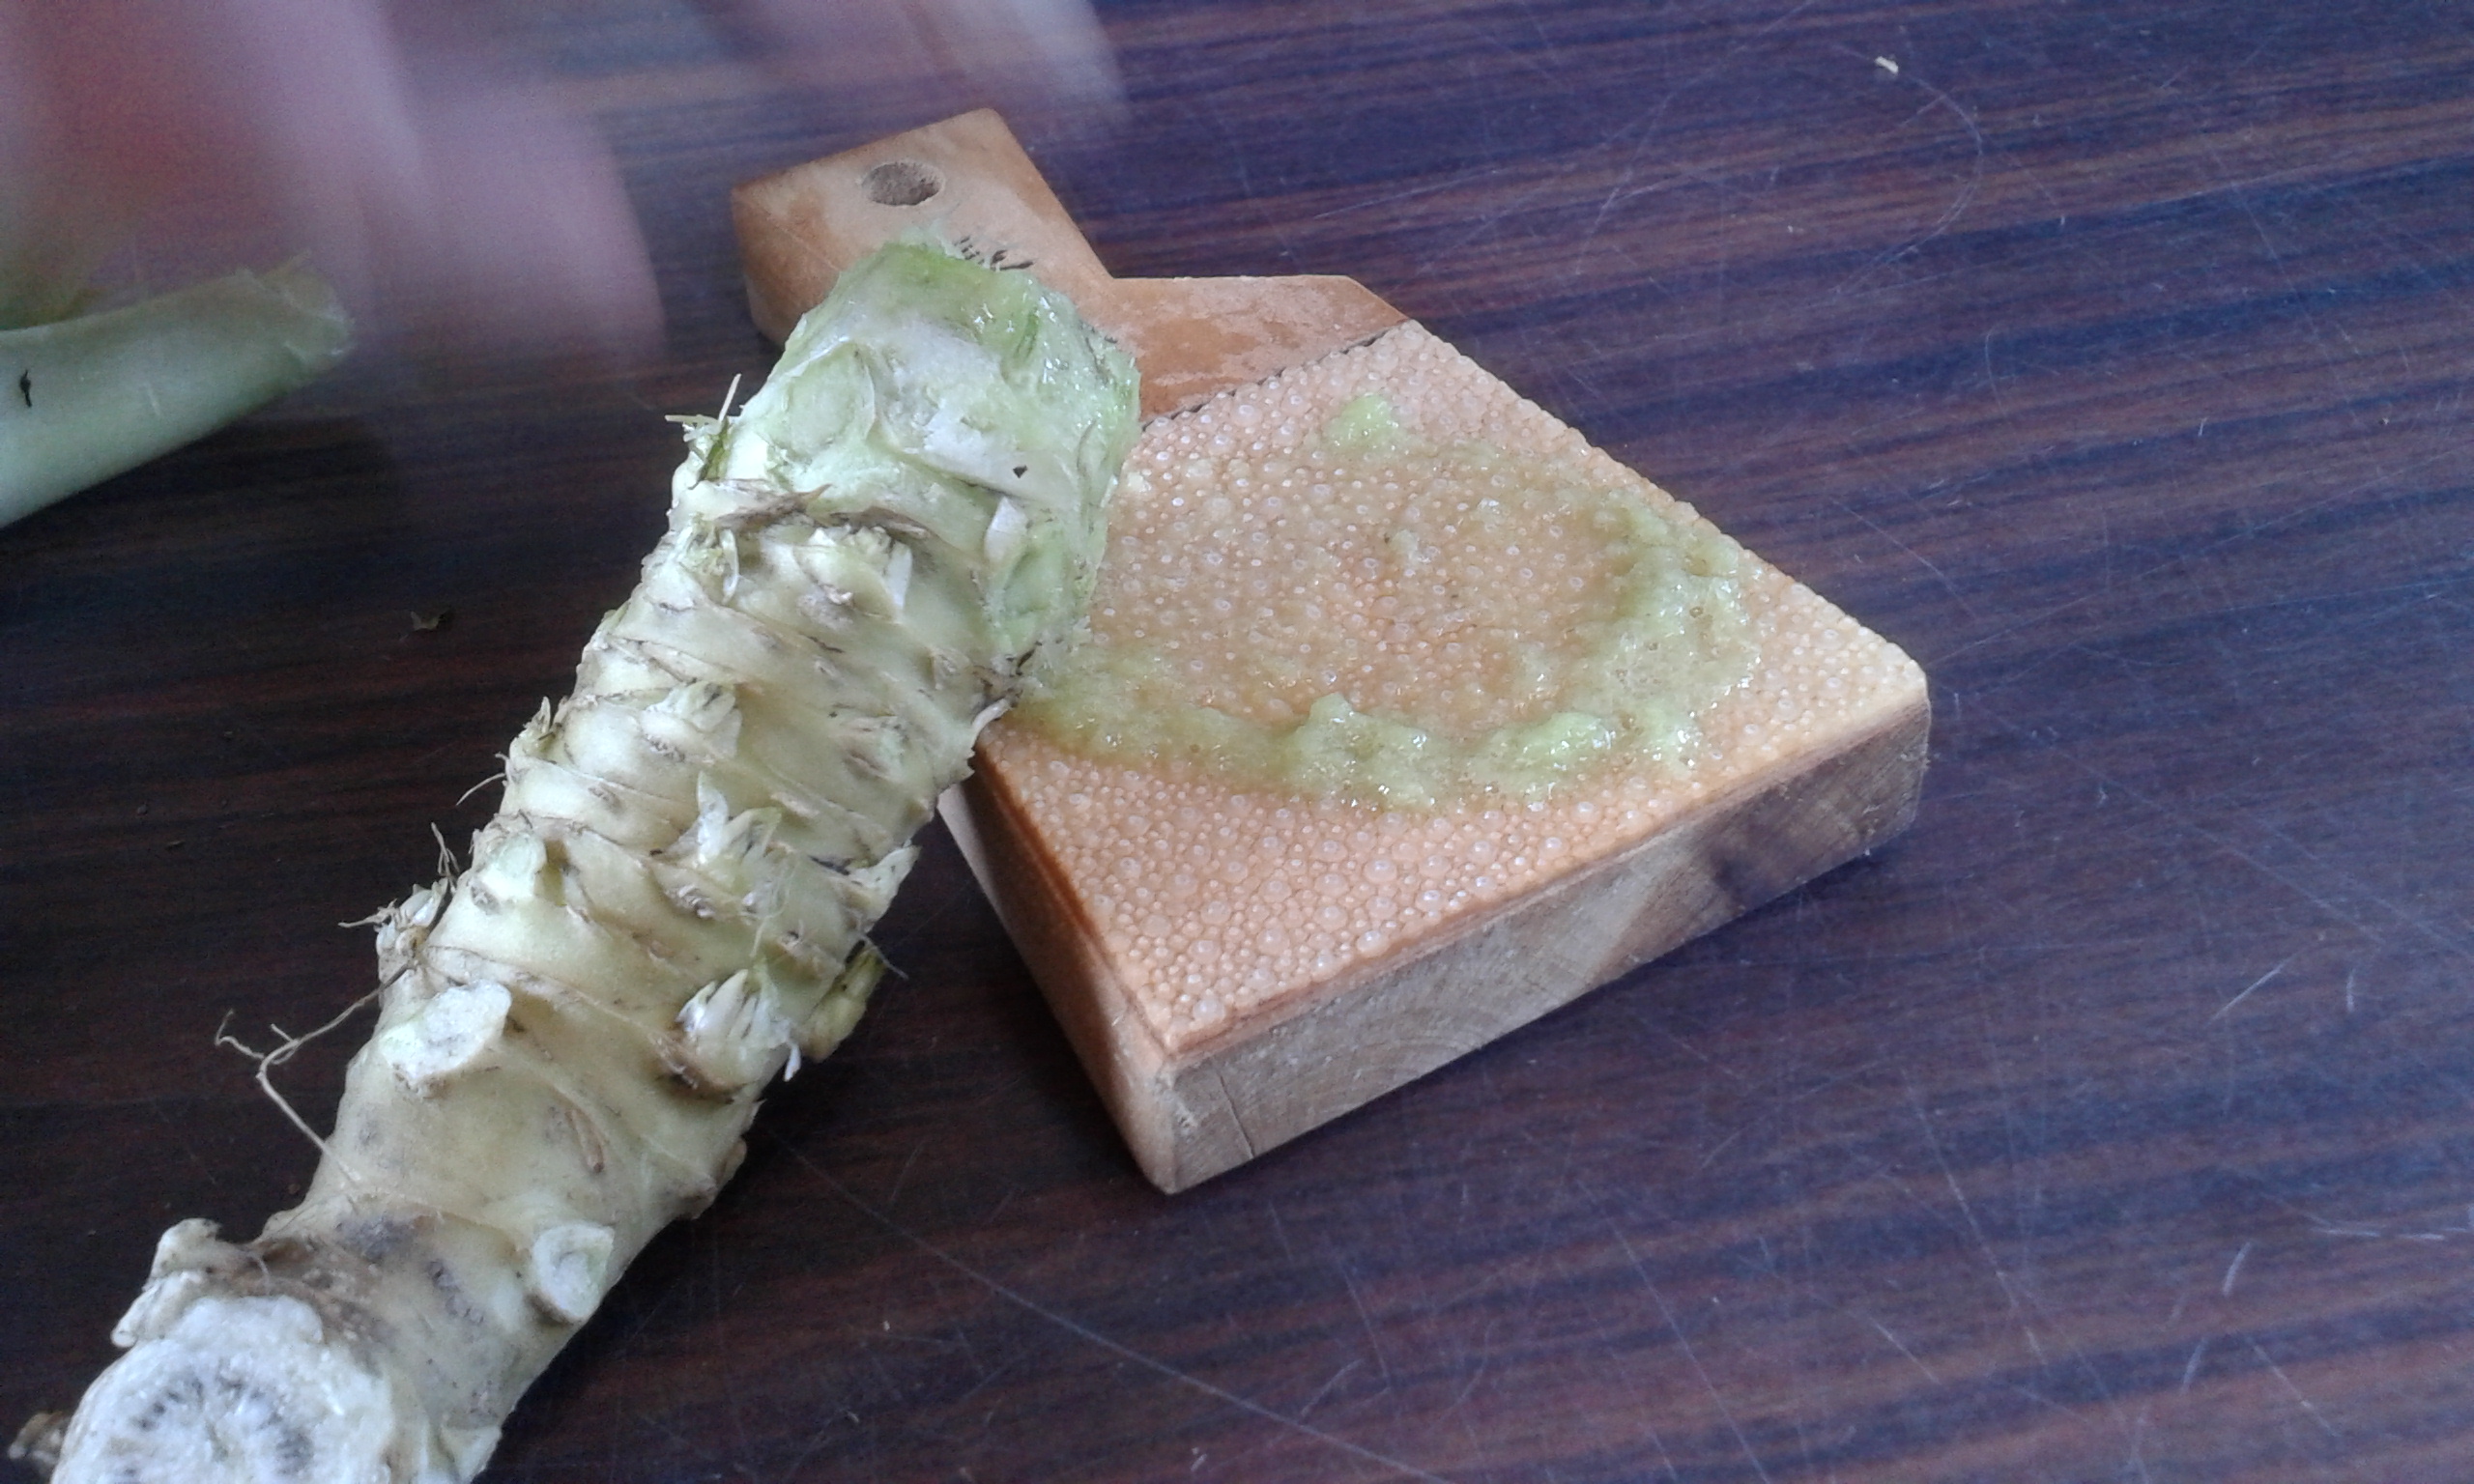 Fresh Wasabi grated on Sharkskin / Frischer Wasabi auf Haifischhaut gerieben